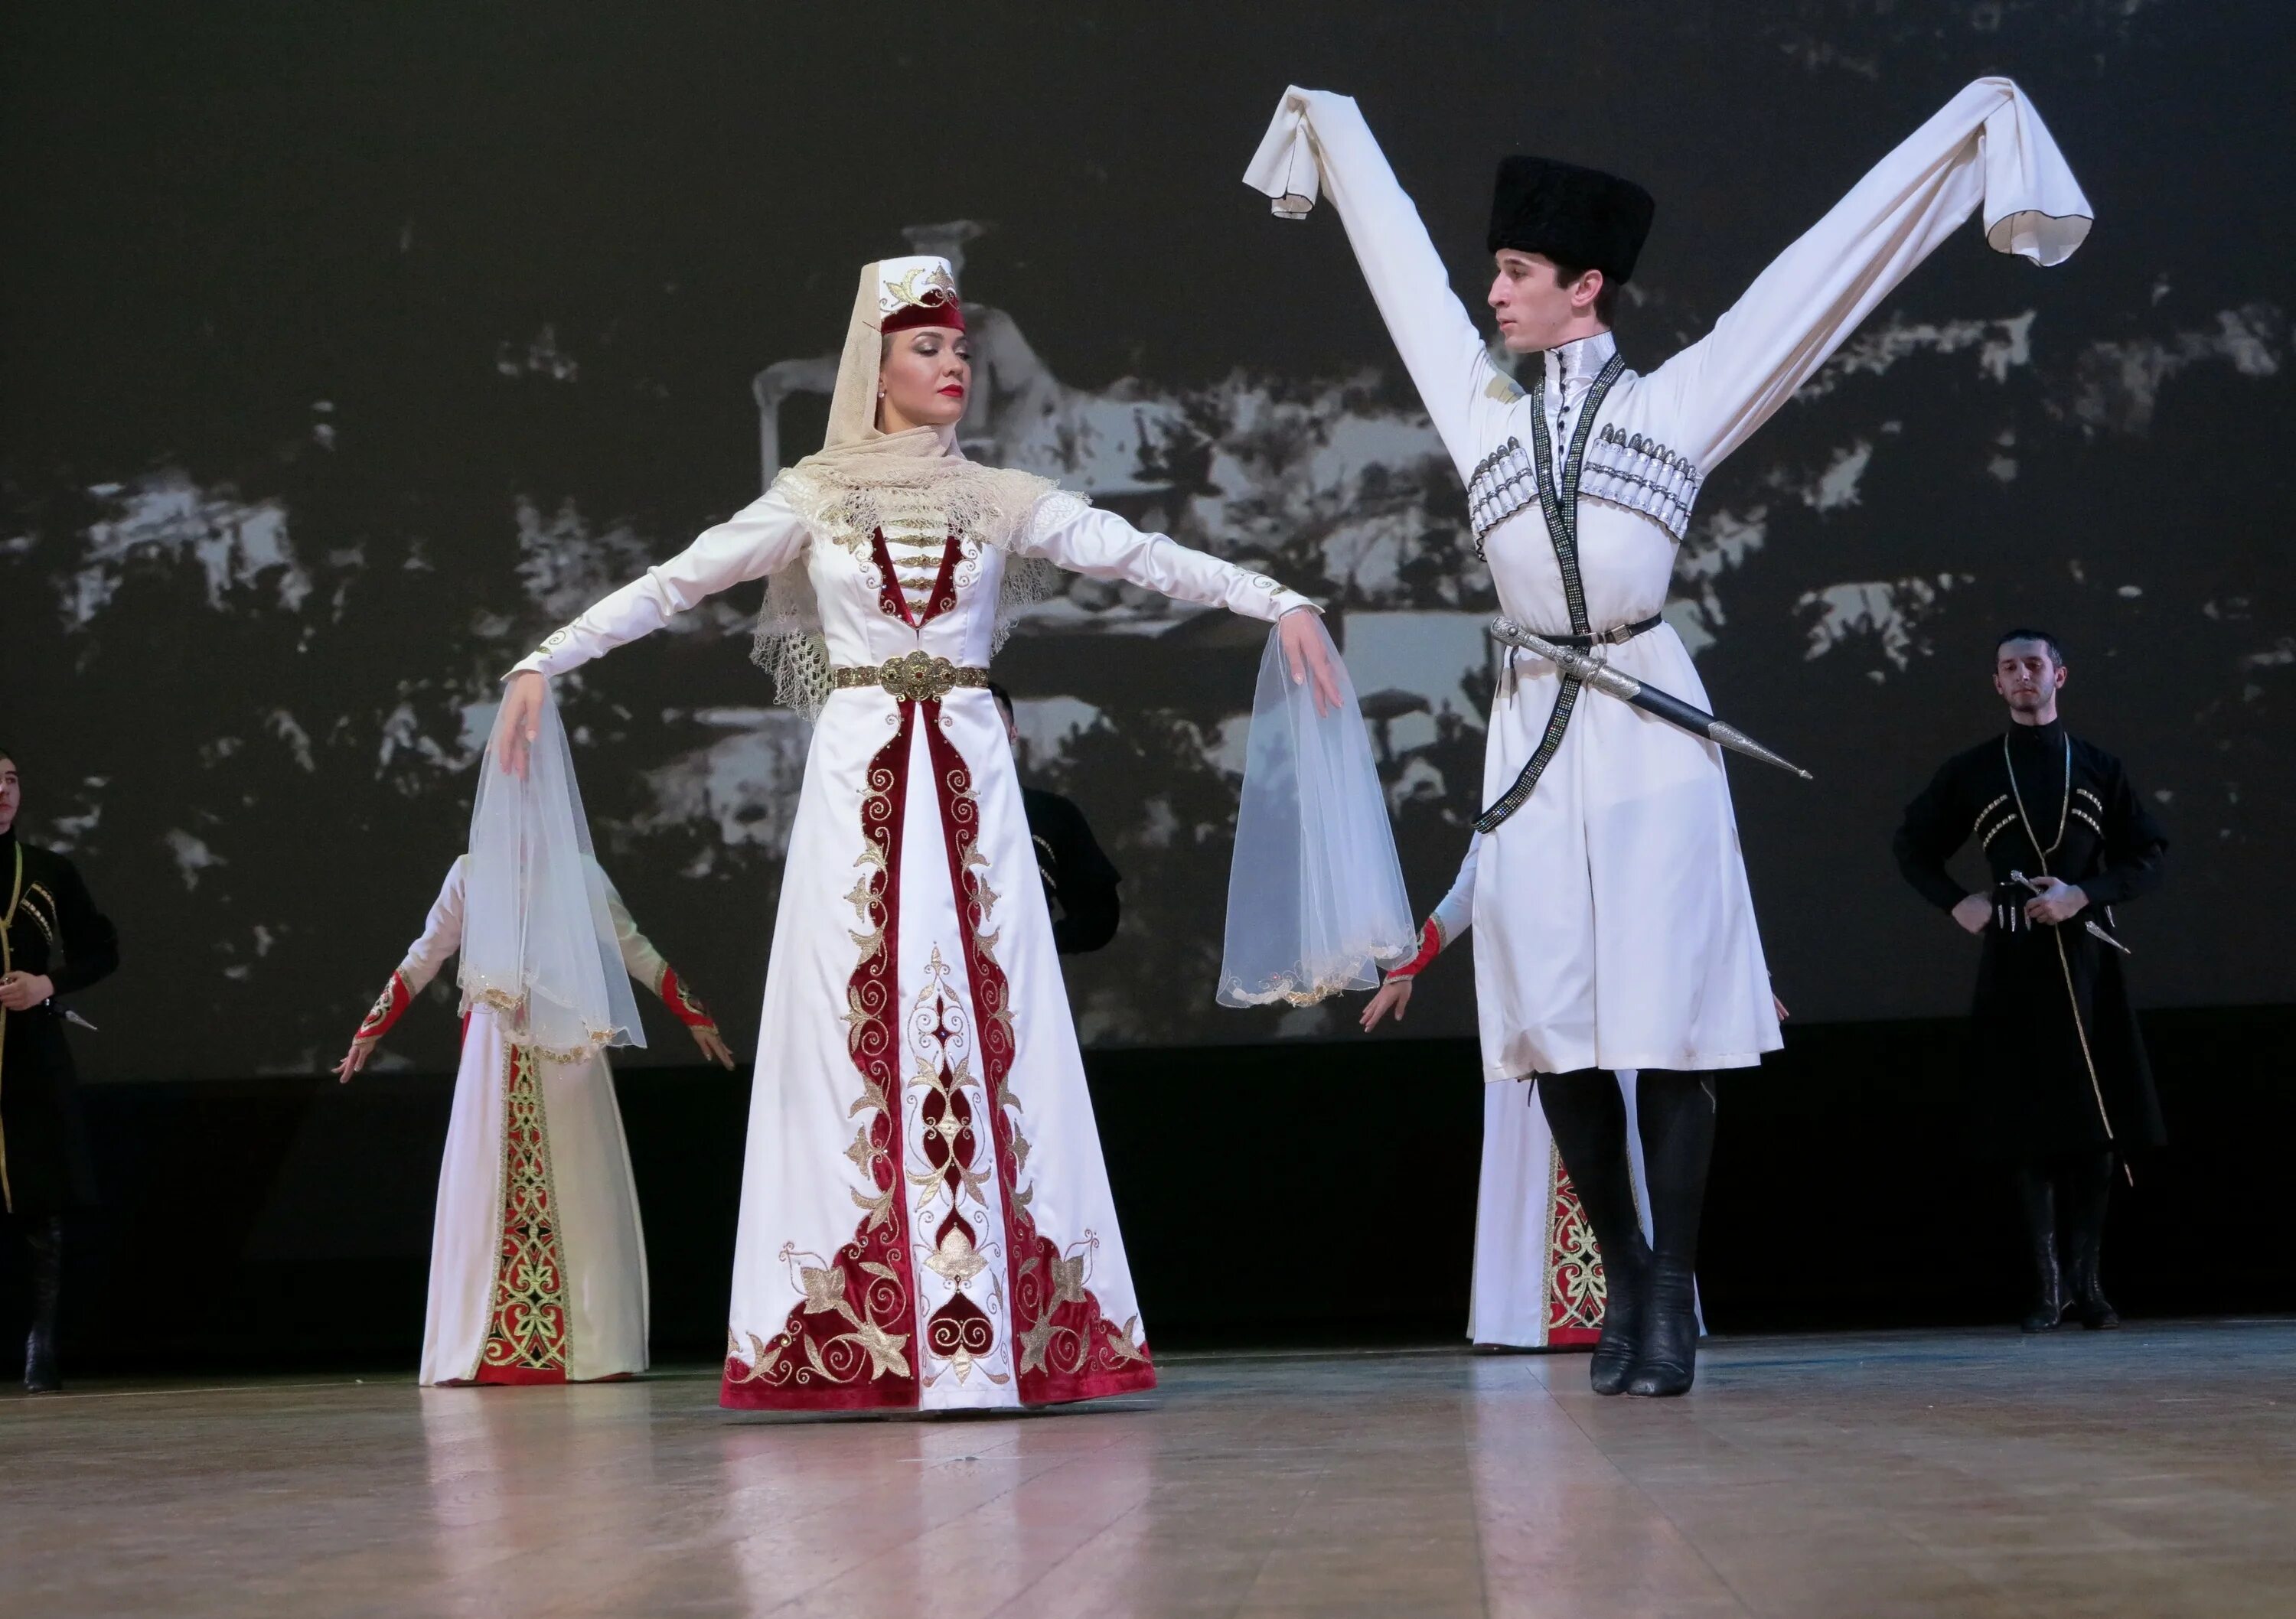 Северная Осетия национальный костюм. Осетины осетины национальный костюм. Национальная одежда Северной Осетии. Южная Осетия национальный костюм.